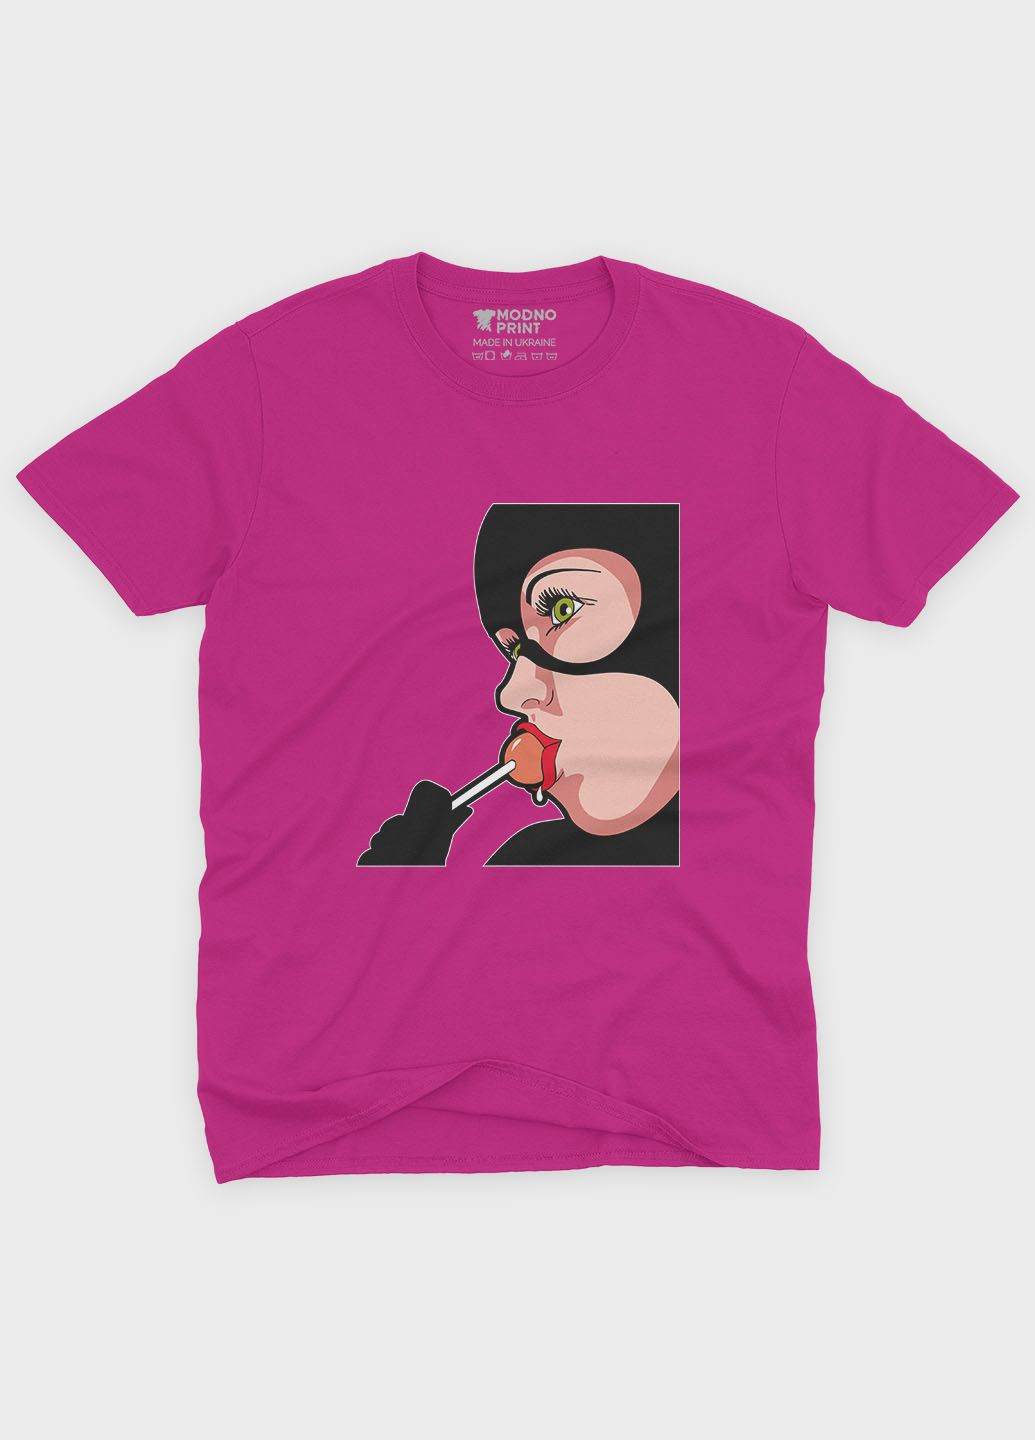 Рожева демісезонна футболка для дівчинки з принтом суперзлодія - жінка-кішка (ts001-1-fuxj-006-007-001-g) Modno